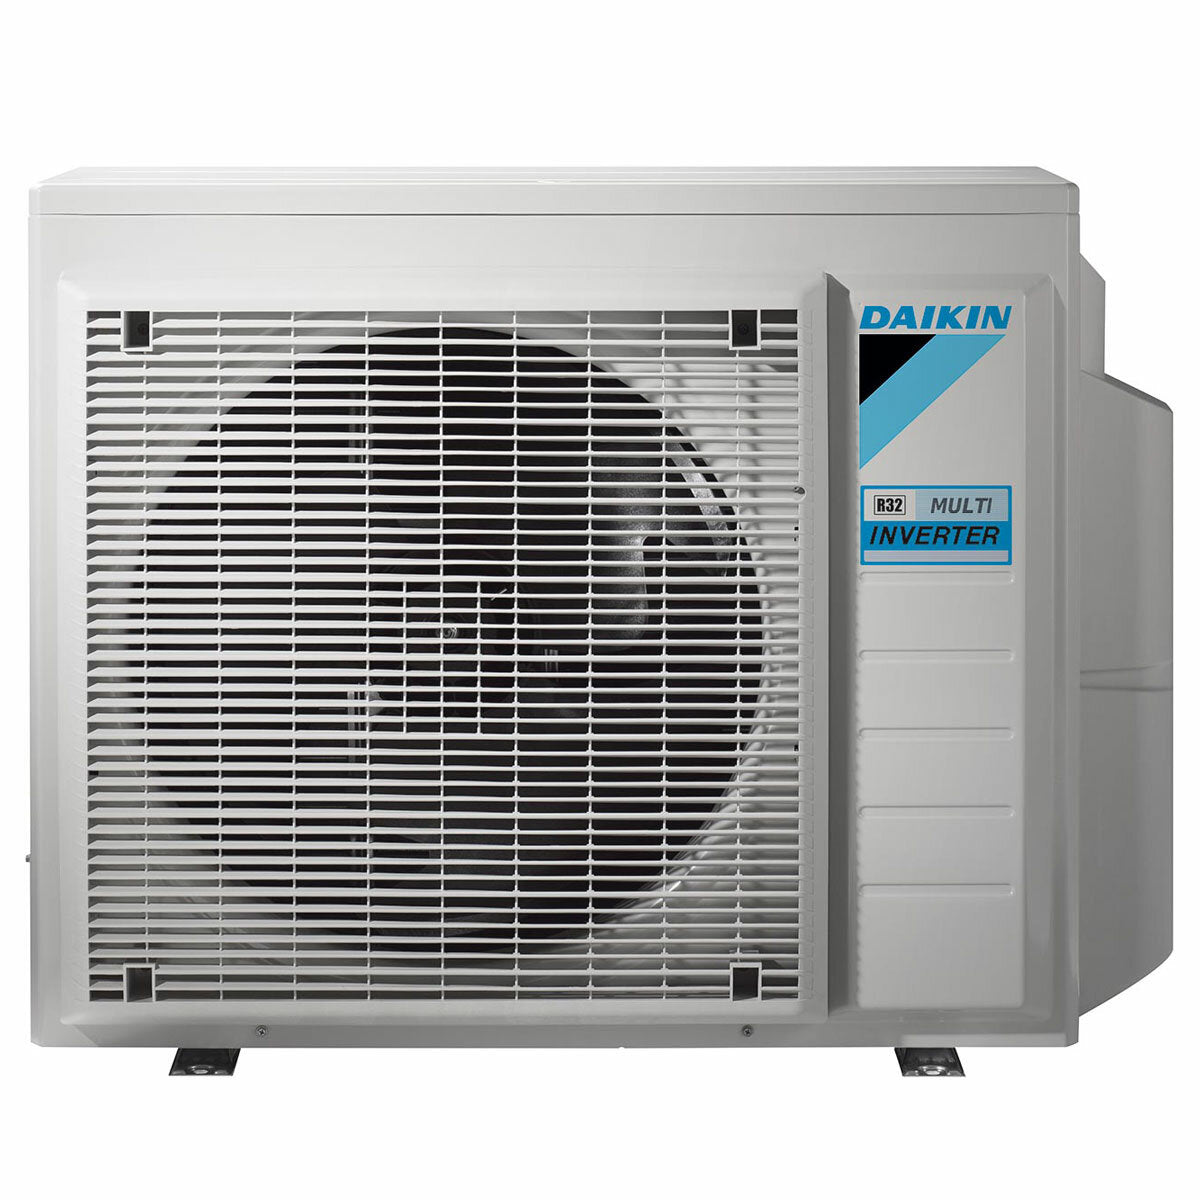 Daikin Emura 3 air conditioner penta split 7000+9000+9000+12000+18000 BTU inverter A++ wifi outdoor unit 7.8 kW White